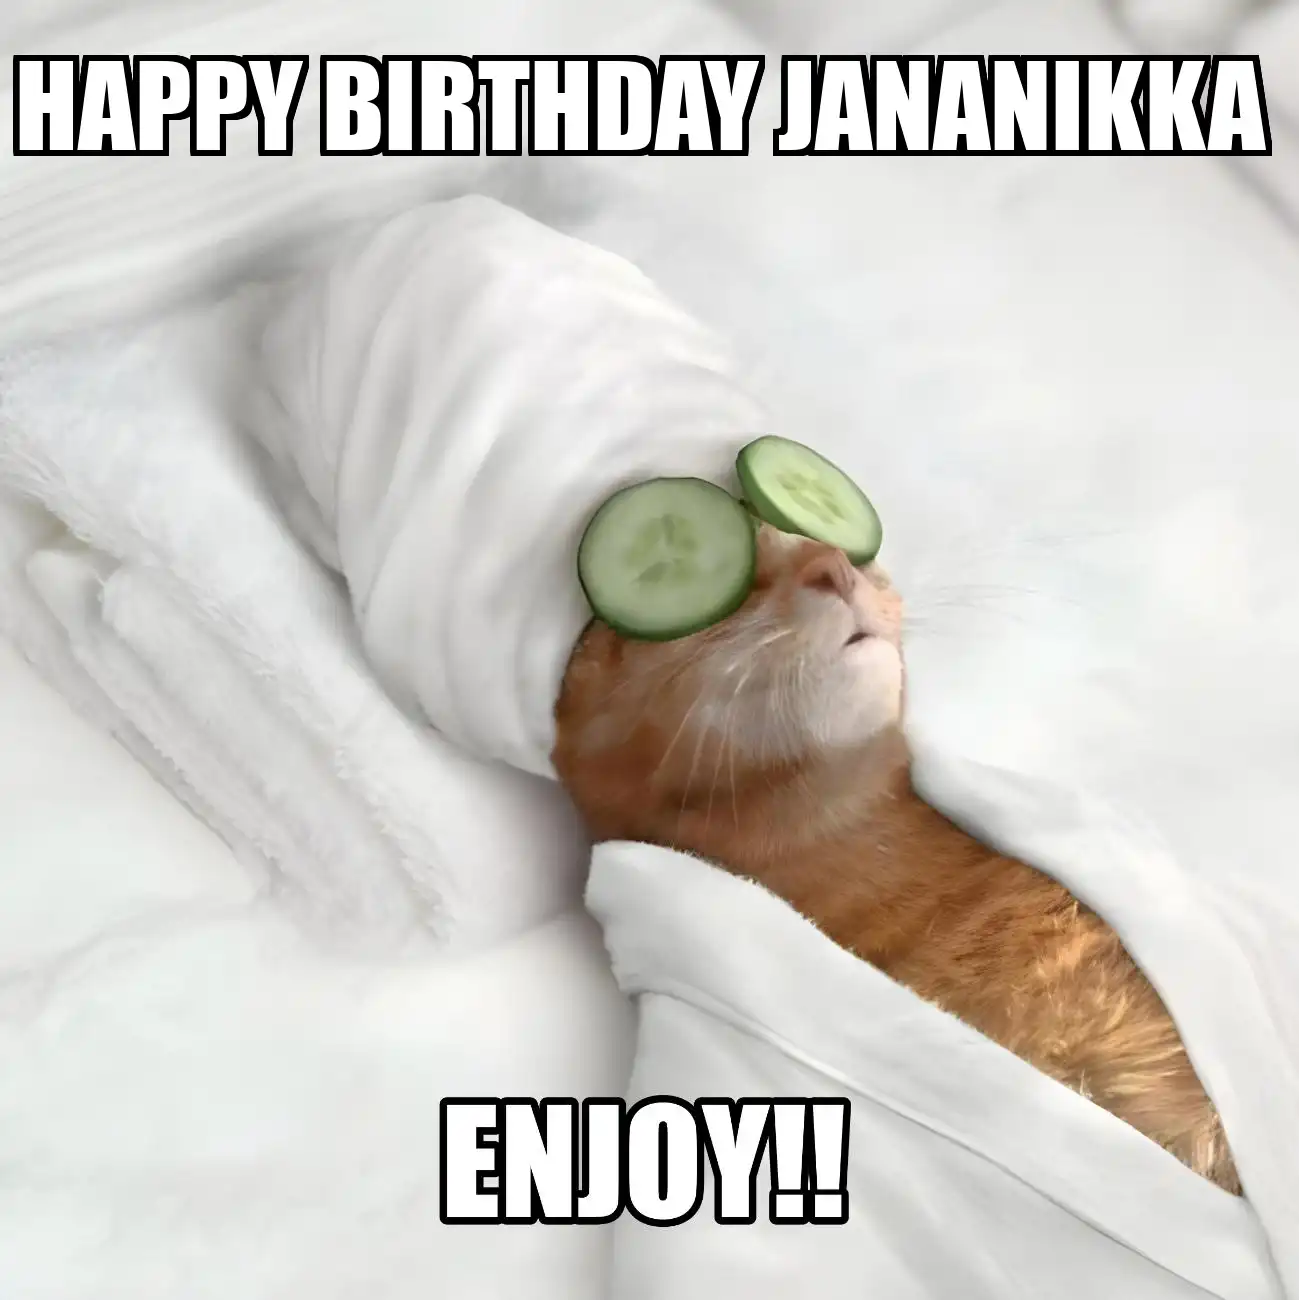 Happy Birthday Jananikka Enjoy Cat Meme